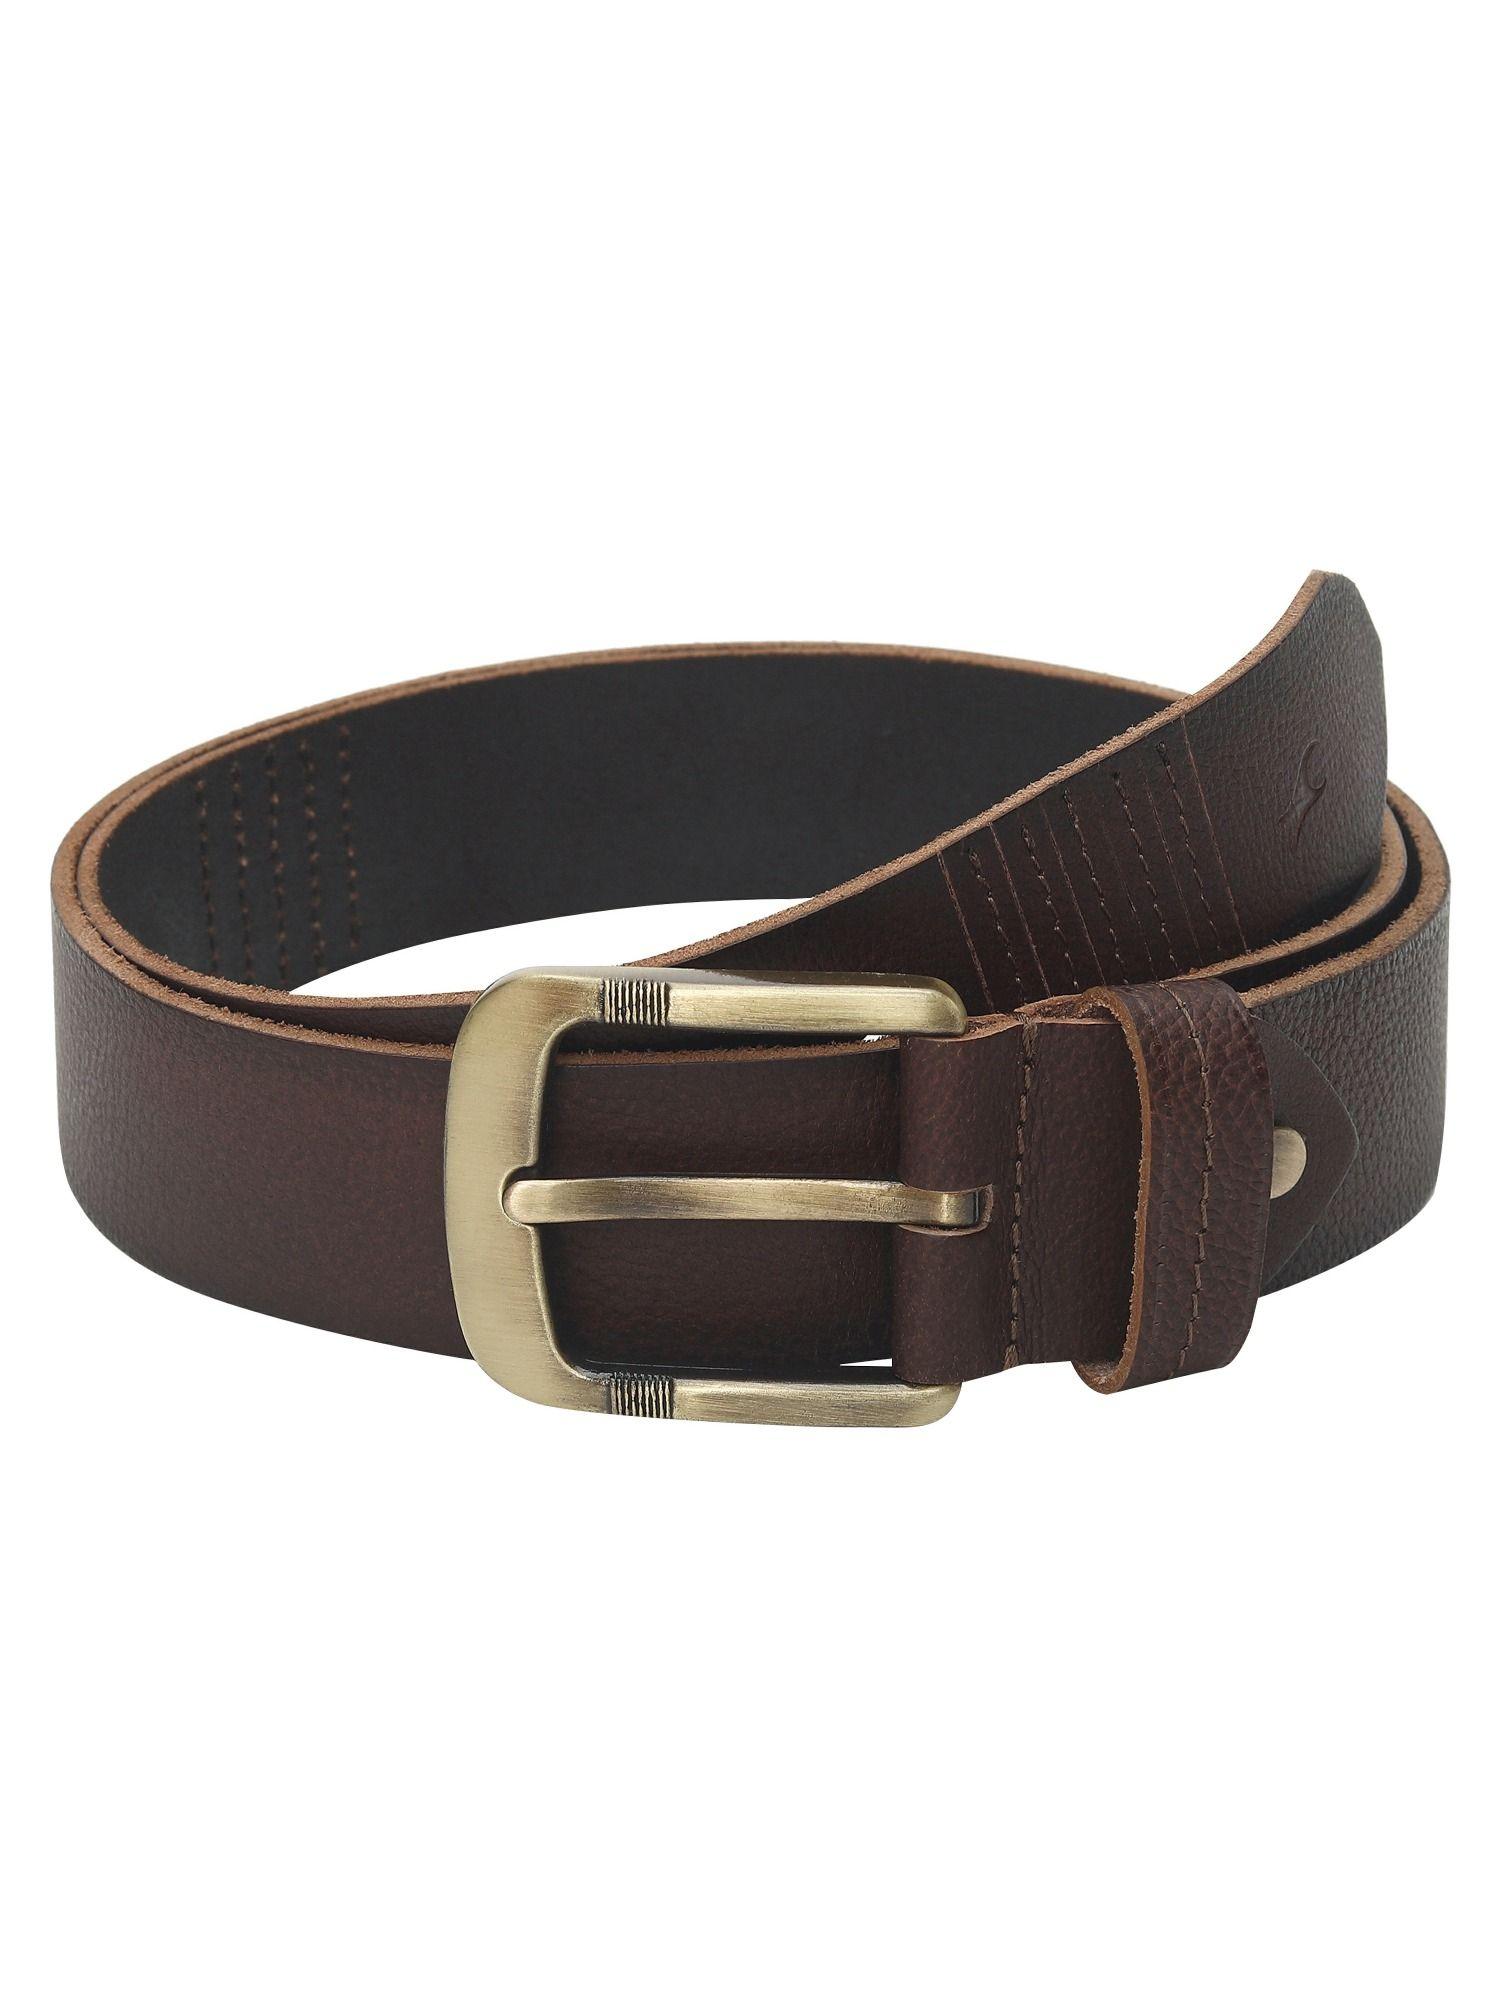 semi formal brown belt